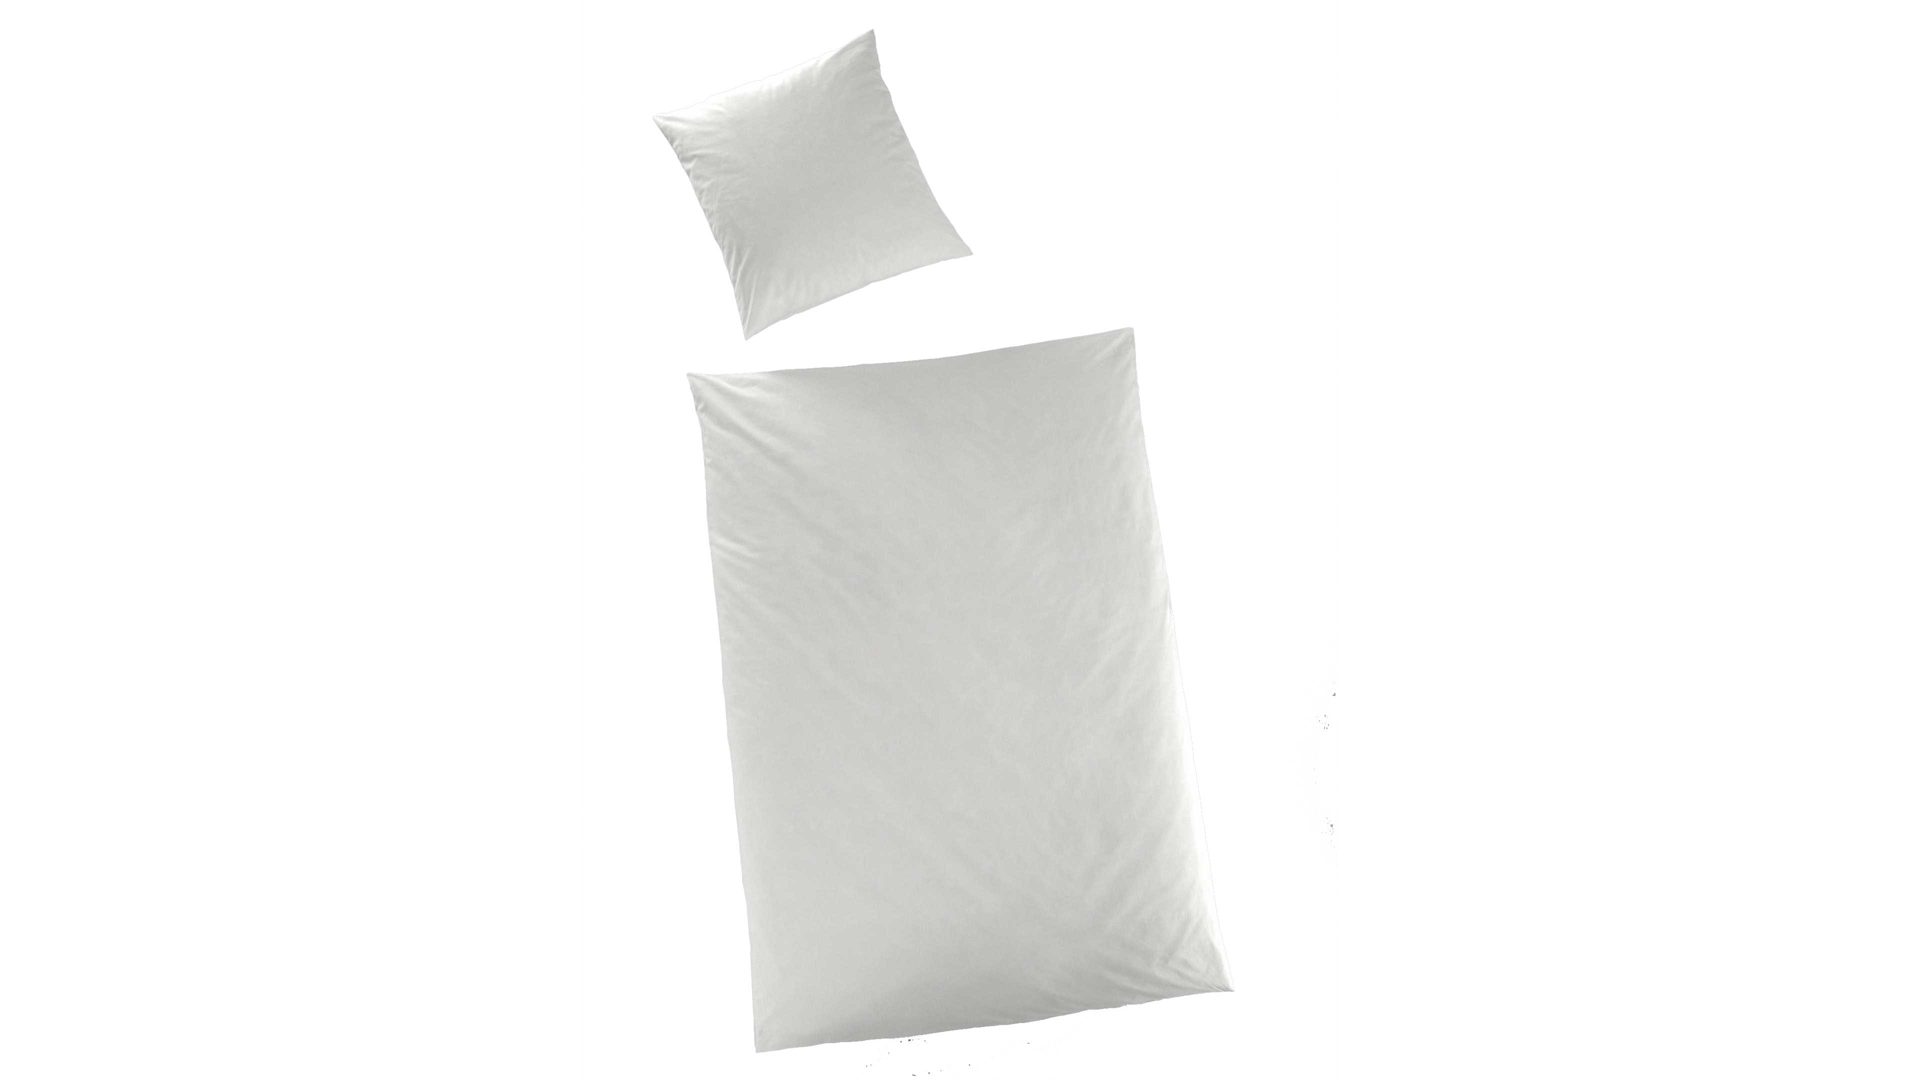 Bettwäsche-Set H.g. hahn haustextilien aus Stoff in Weiß HAHN Luxus-Satin-Bettwäsche Sempre weißer Baumwollsatin - zweiteilig, ca. 155 x 200 cm